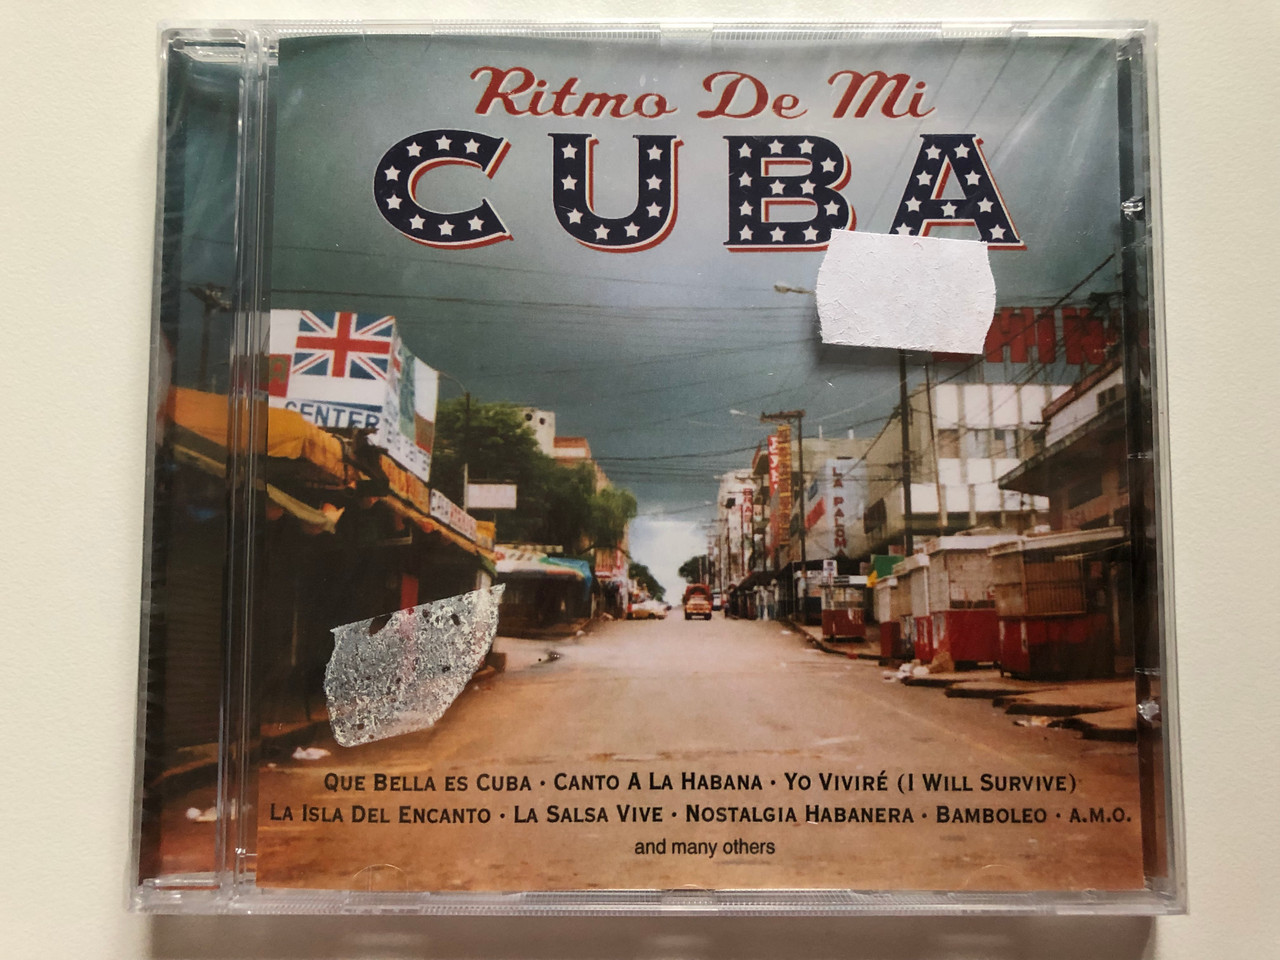 https://cdn10.bigcommerce.com/s-62bdpkt7pb/products/0/images/202182/Ritmo_De_Mi_Cuba_Que_Bella_Es_Cuba_Canto_A_La_Habana_Yo_Vivir_I_Will_Survive_La_Isla_Del_Encanto_La_Salsa_Vive_Nostalgia_Habanera_Bamboleo_and_many_others_Eurotrend_Audio_CD_CD_1_1__01578.1639985002.1280.1280.JPG?c=2&_gl=1*1h55i3b*_ga*MjA2NTIxMjE2MC4xNTkwNTEyNTMy*_ga_WS2VZYPC6G*MTYzOTk4MjAwOC4yMjMuMS4xNjM5OTg0ODE3LjE2